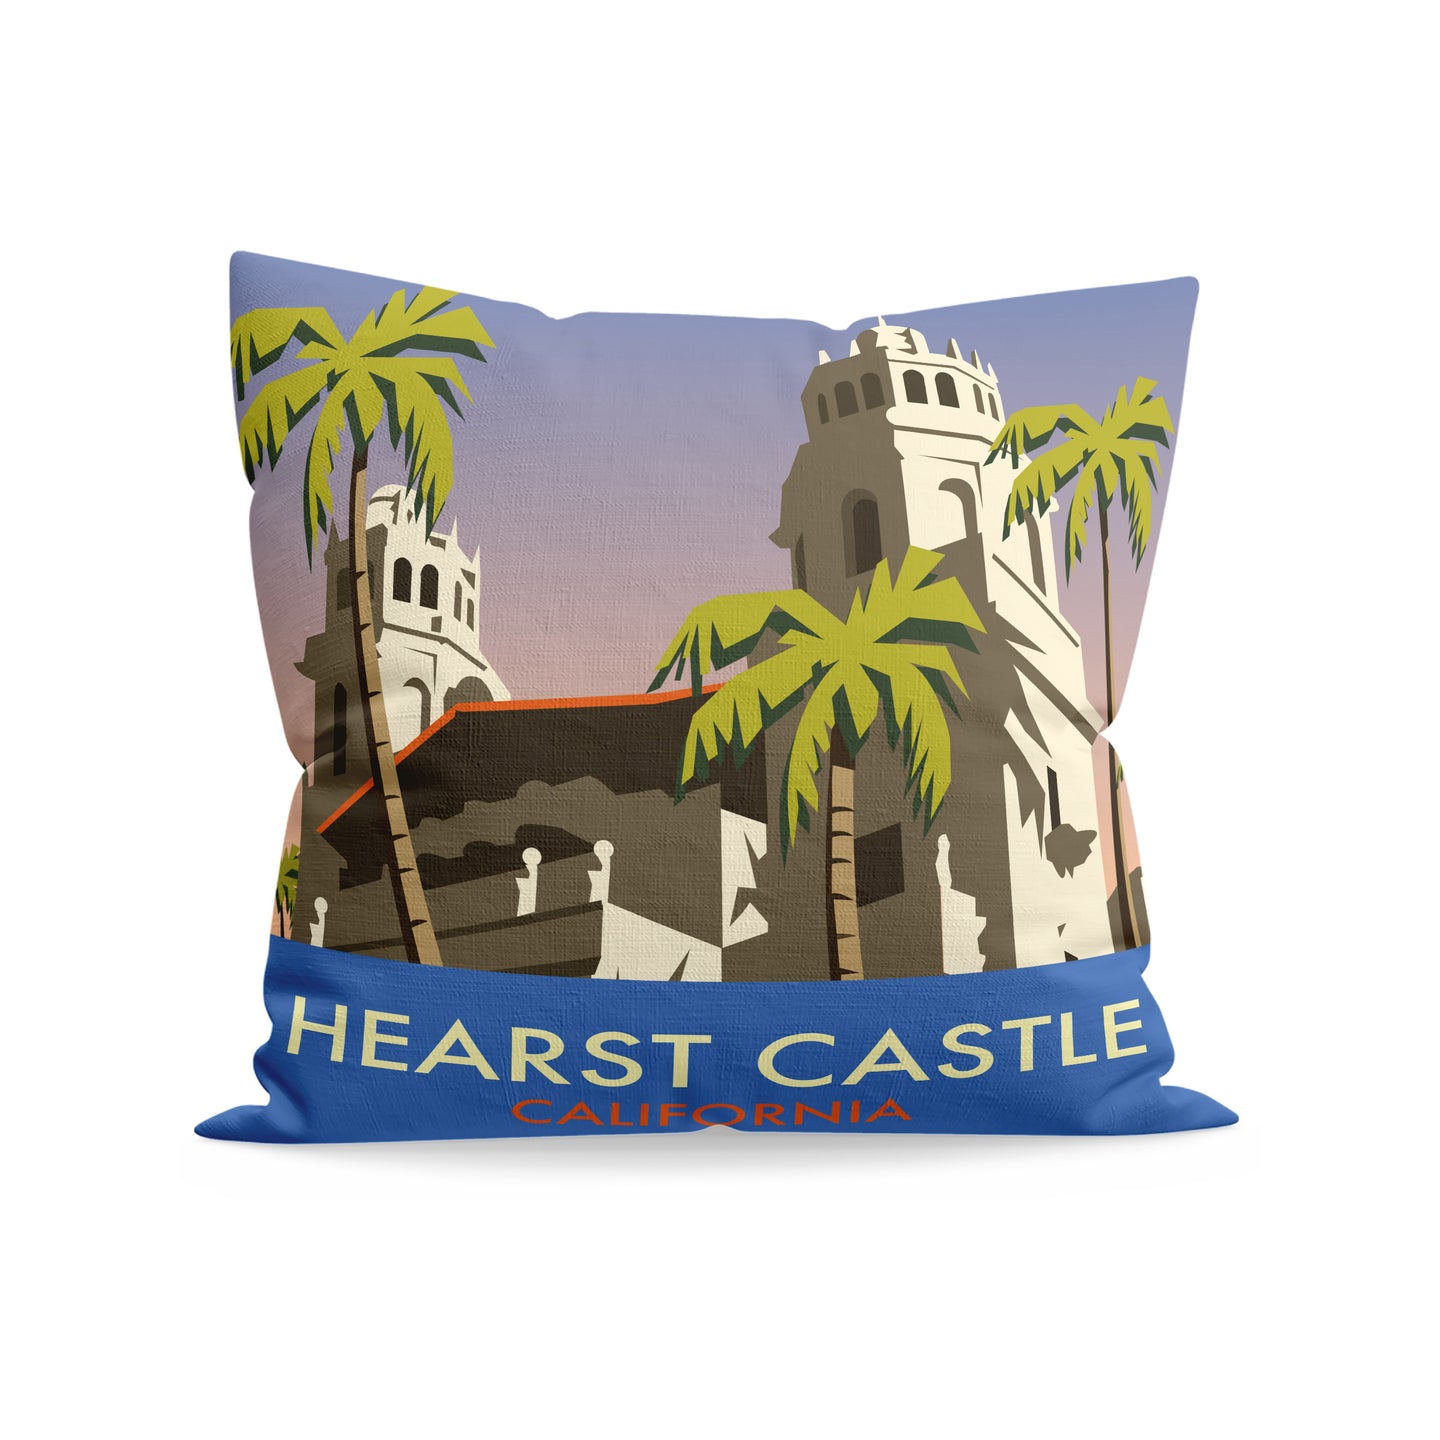 Hearst Castle, California Cushion